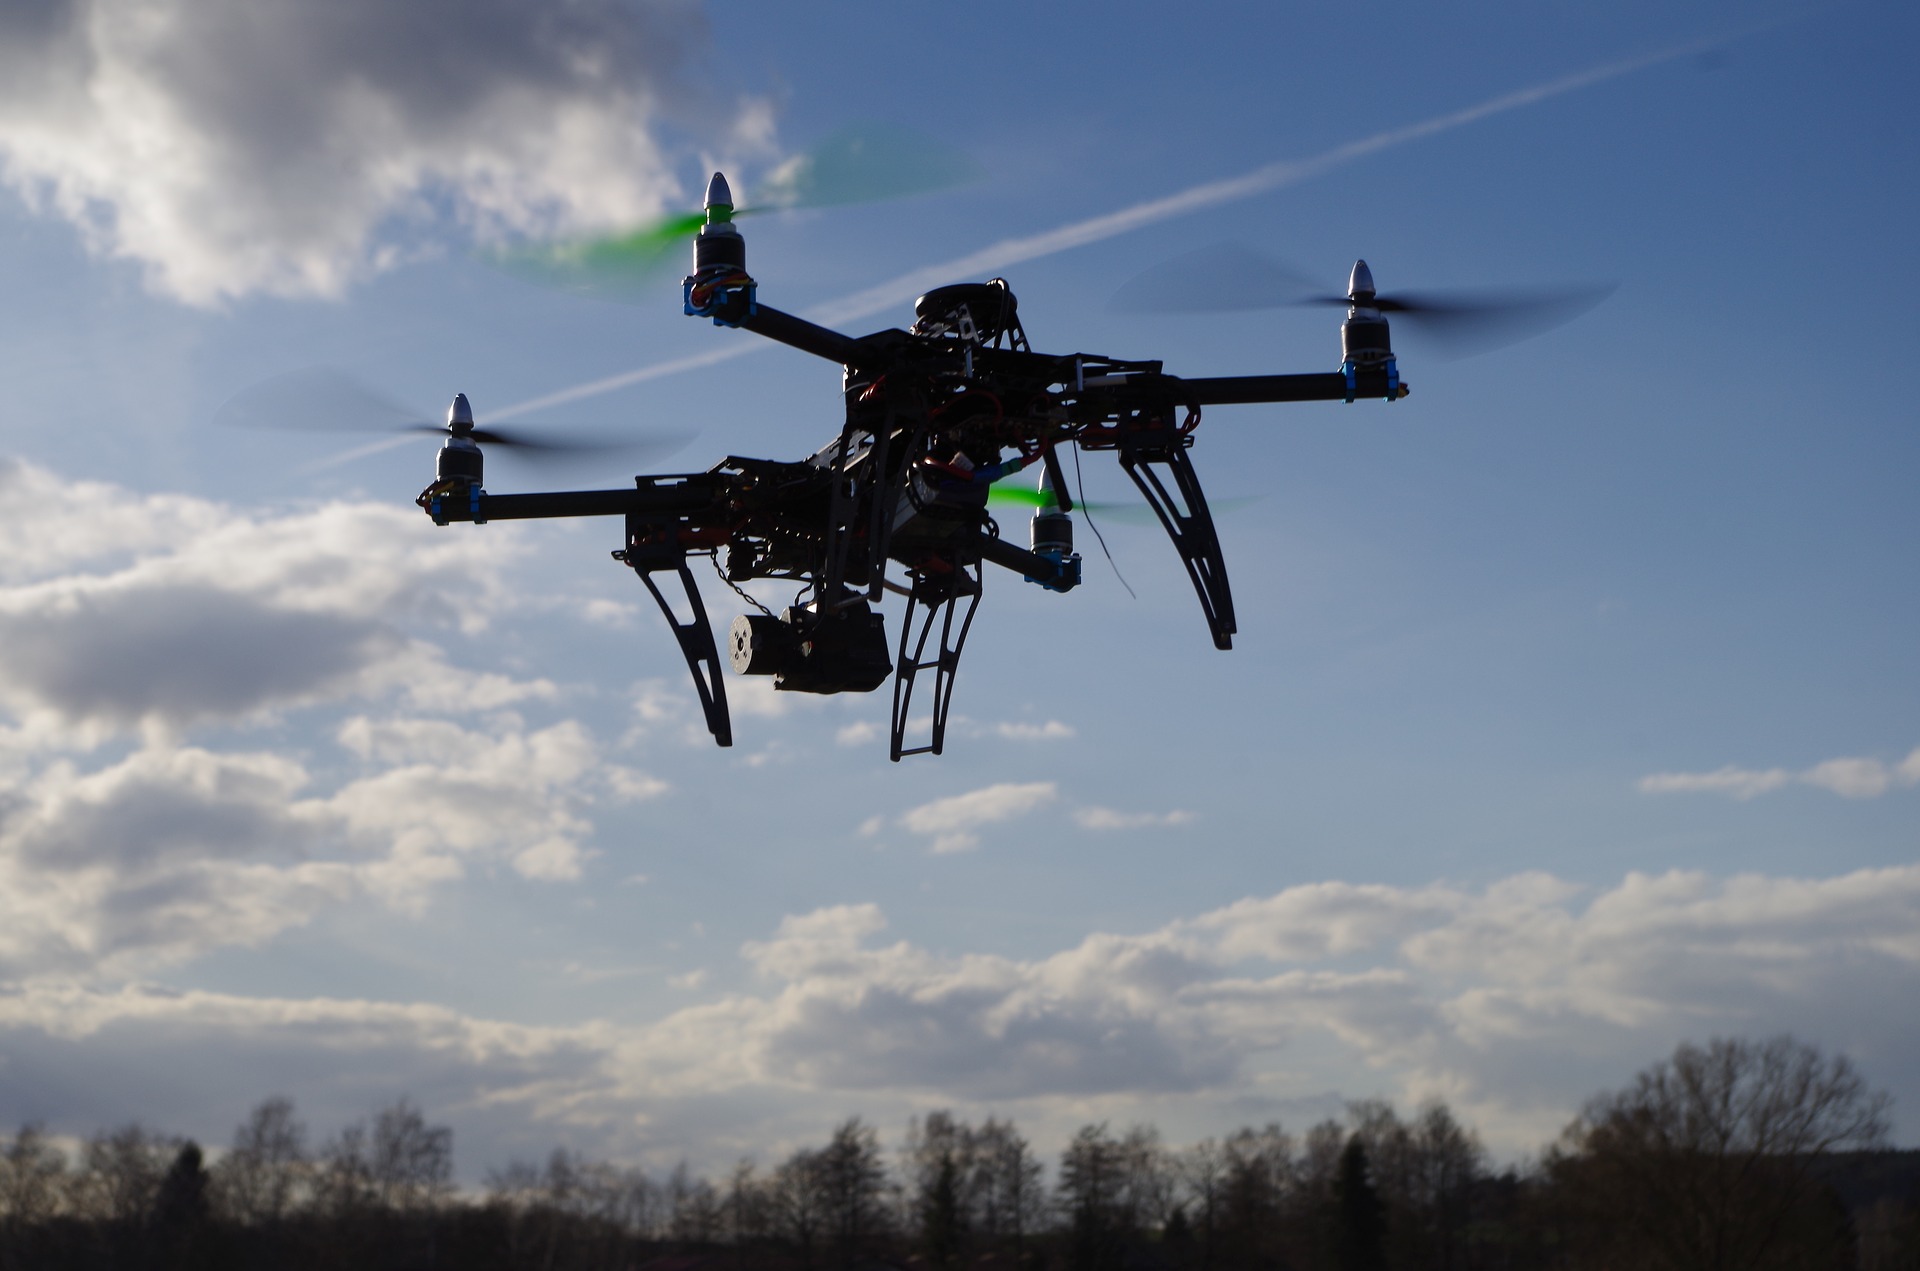 Drohne ABC - Das Hobby Drohnen bauen und fliegen